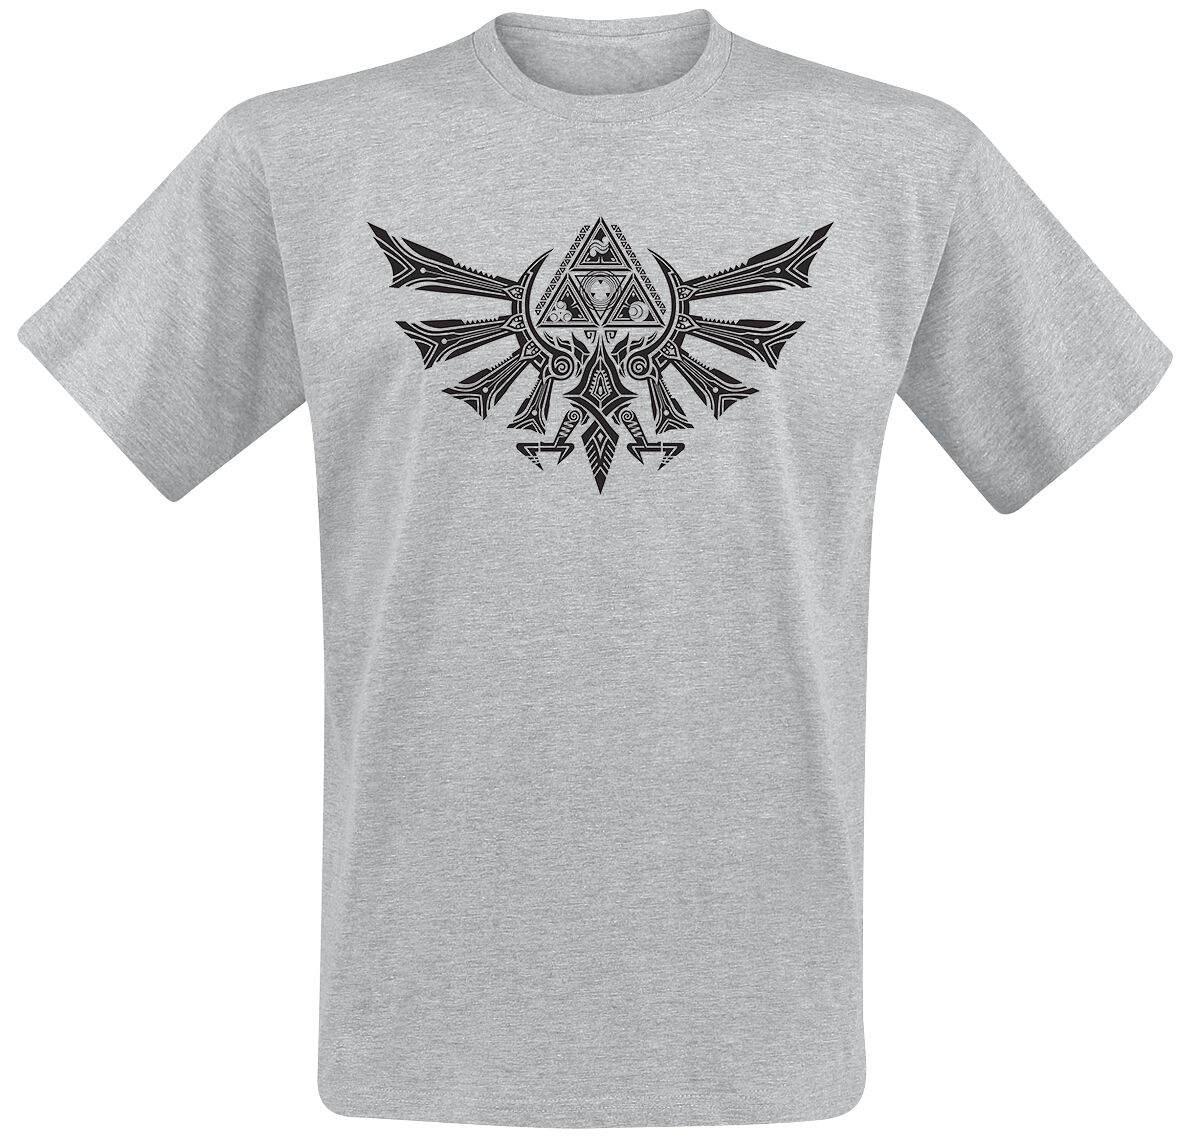 The Legend Of Zelda - Gaming T-Shirt - Hyrule Tribal - S bis XXL - für Männer - Größe S - grau meliert